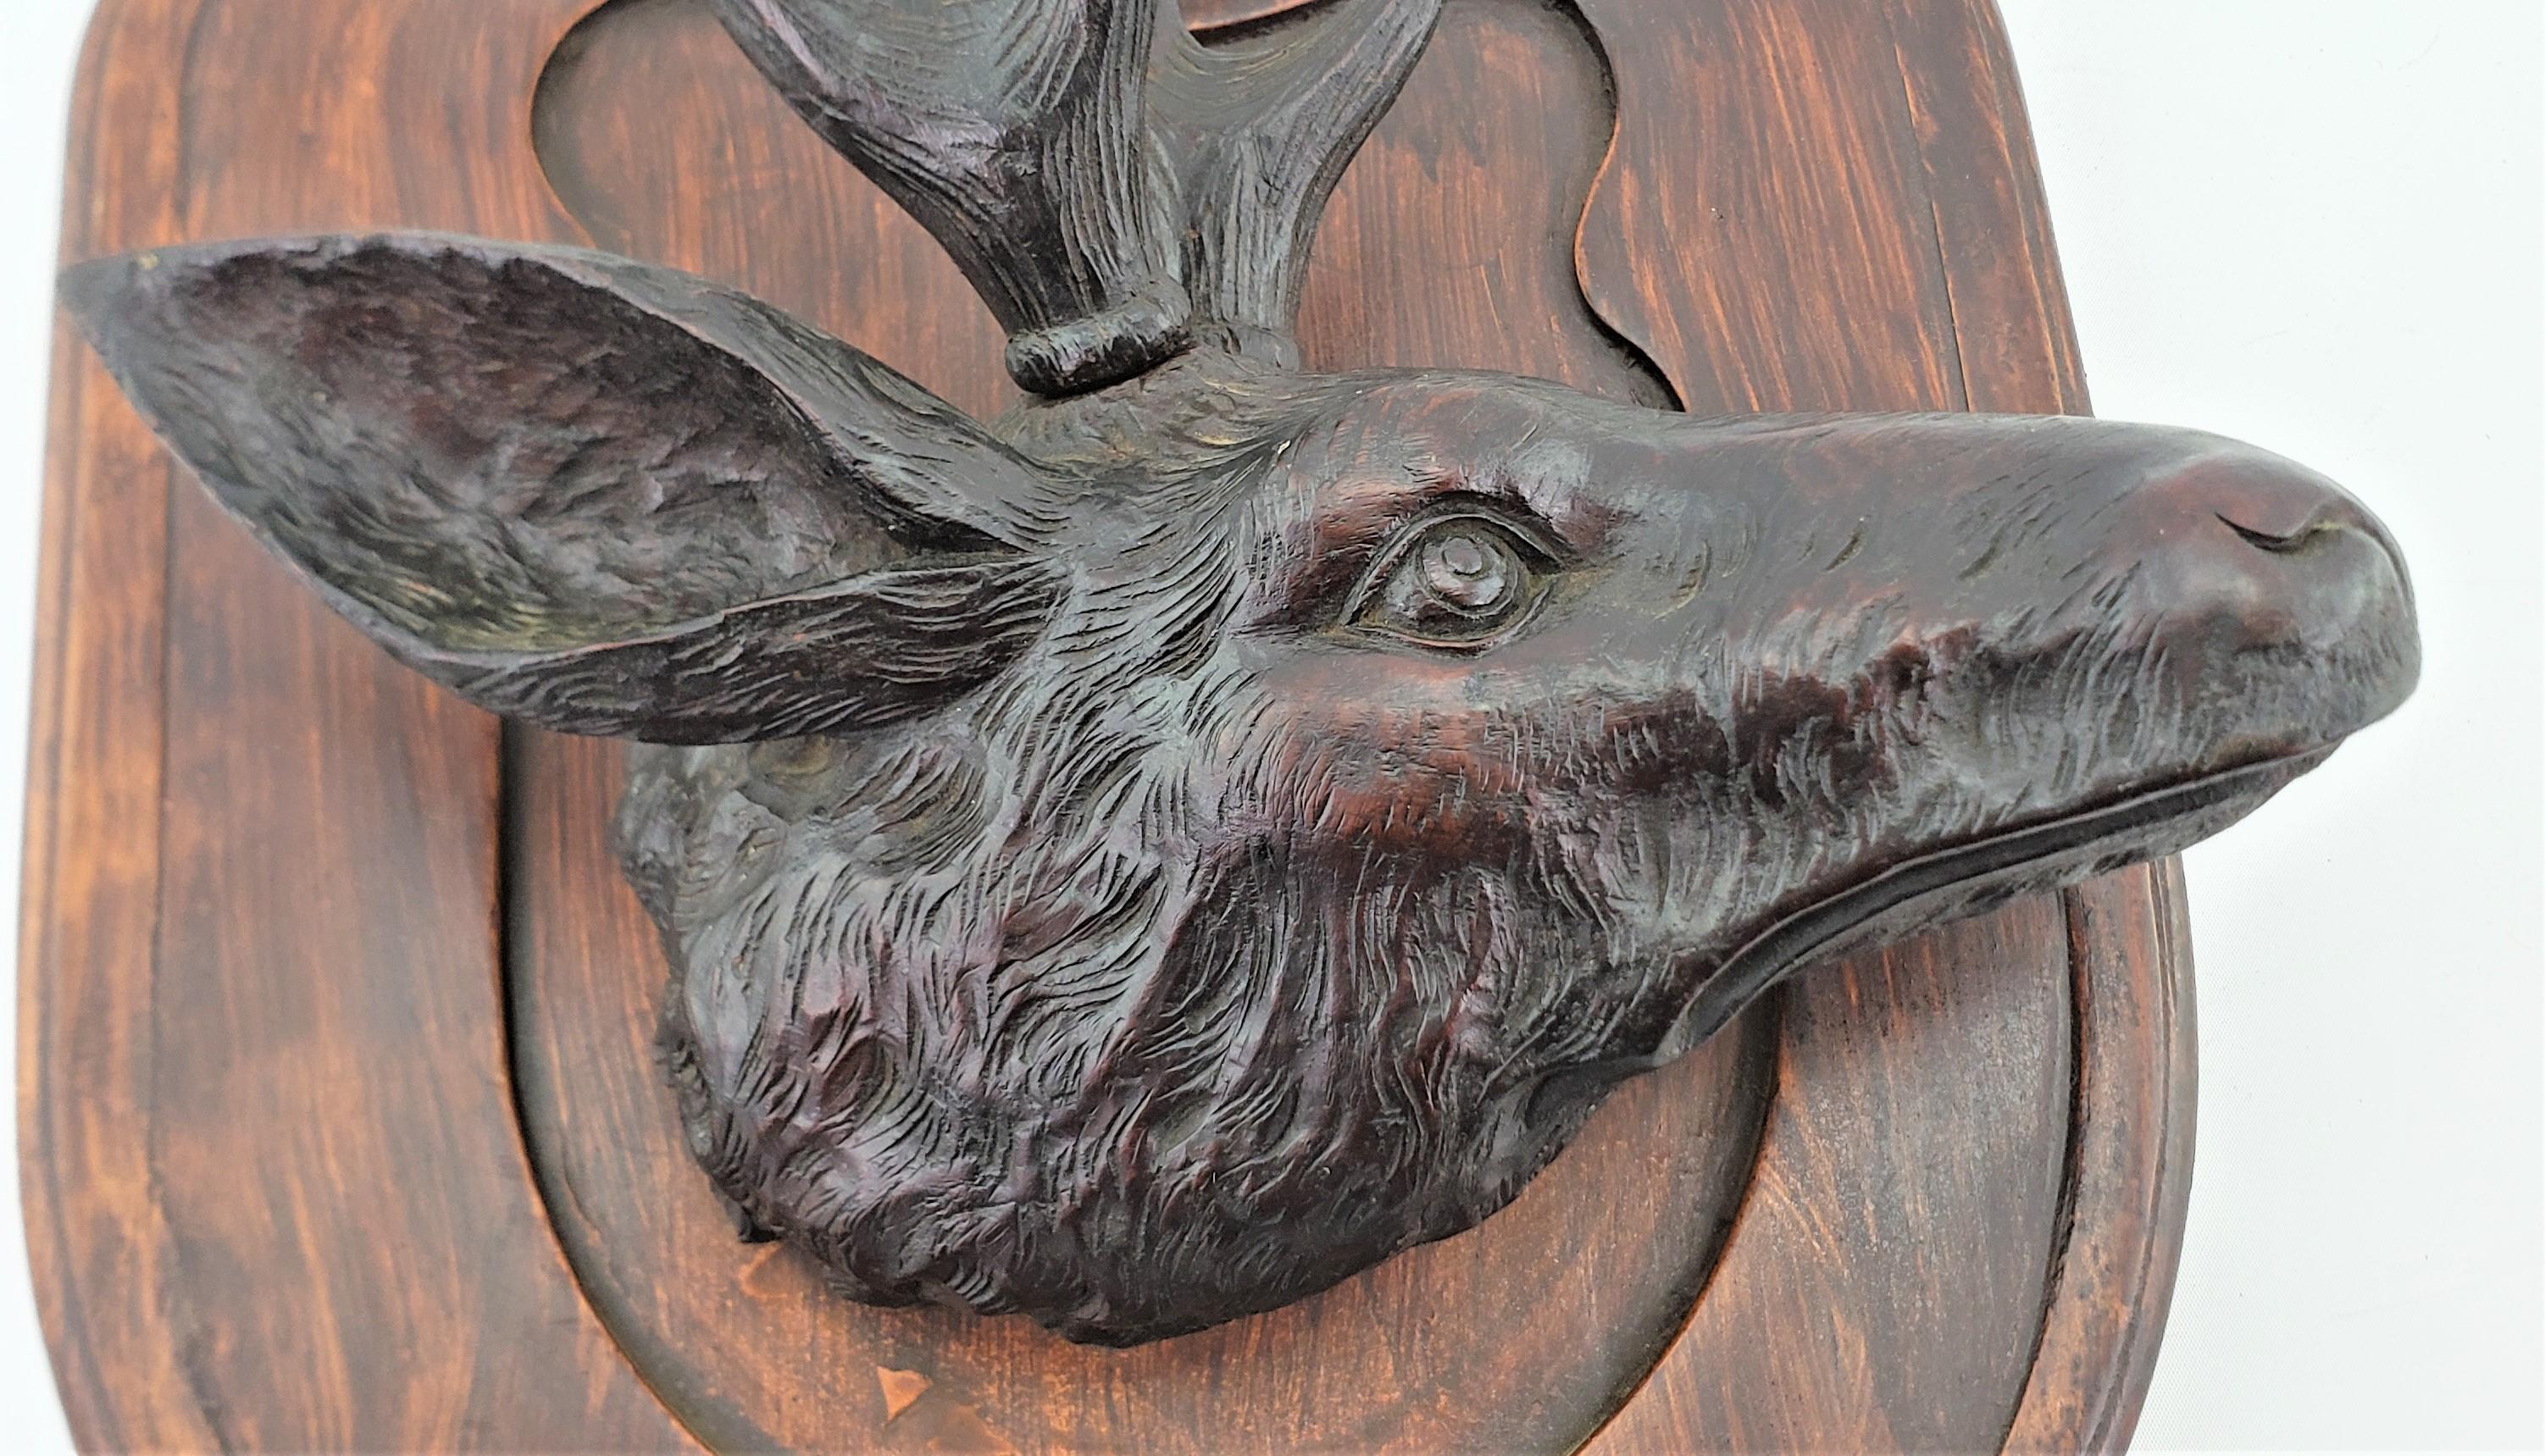 Antique Black Forest Hand-Carved Deer or Elk Head Wall Plaque or Sculpture For Sale 2